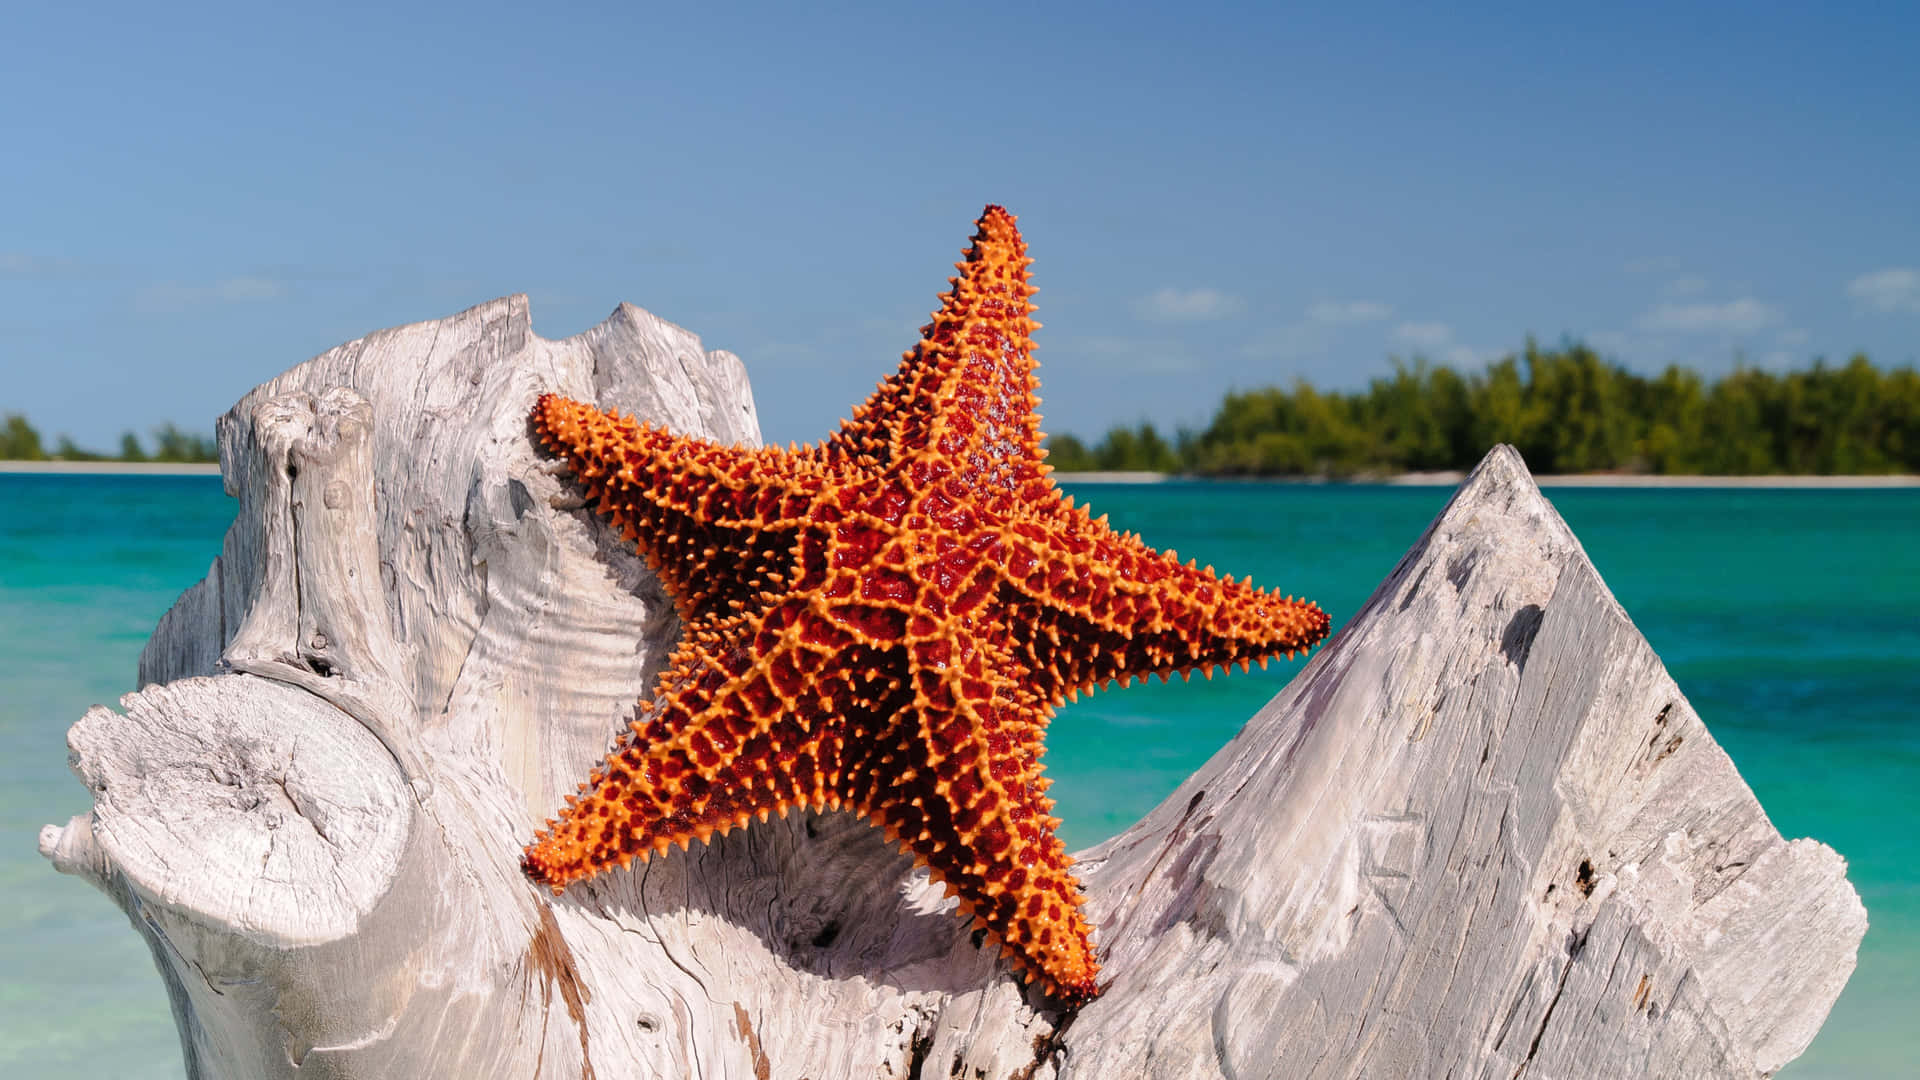 Unafotografía De Alta Definición De Una Colorida Estrella De Mar Naranja En Su Hábitat Natural.